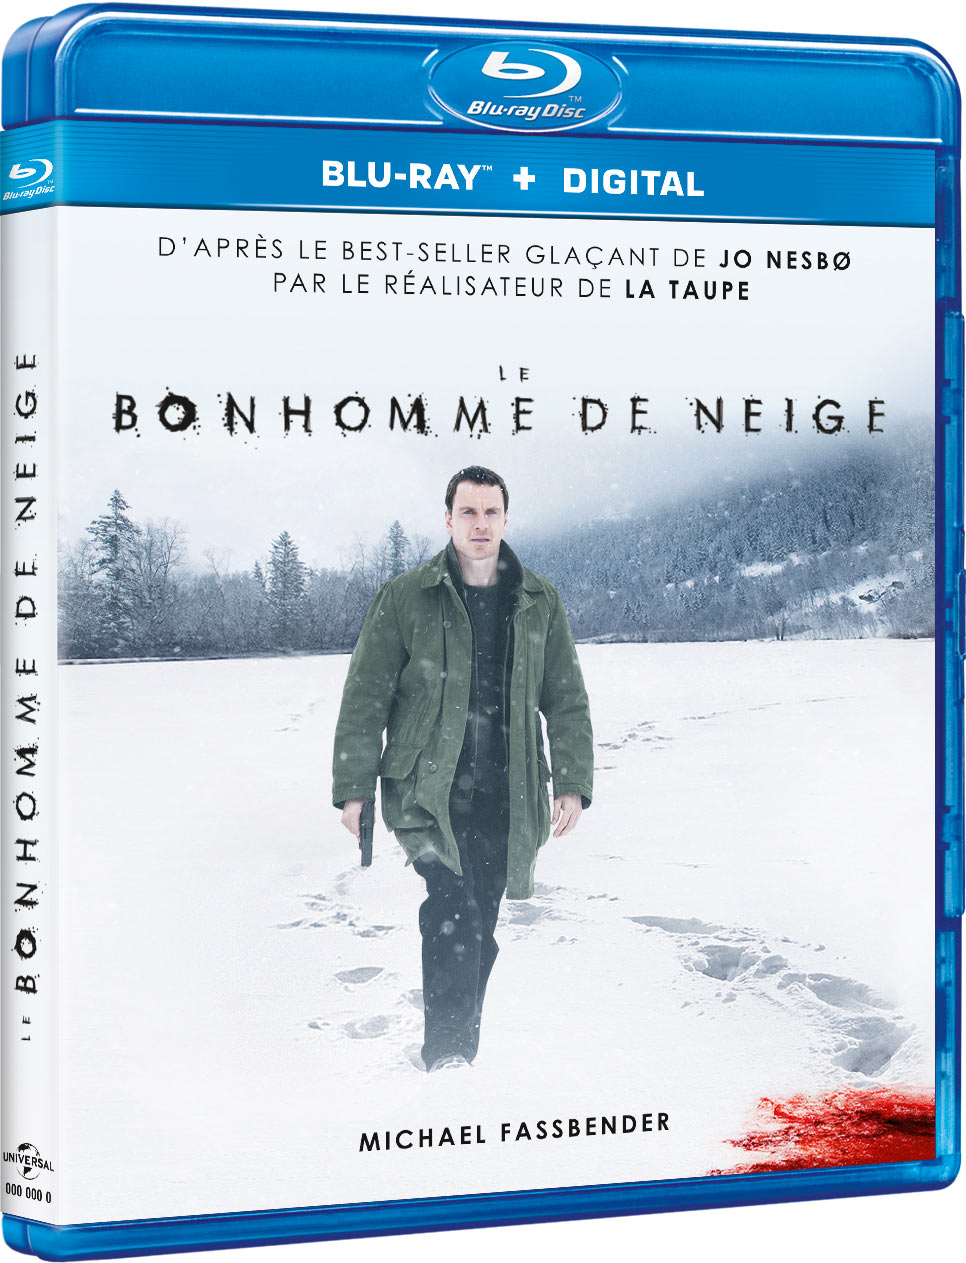 Le Bonhomme de neige - Blu-ray